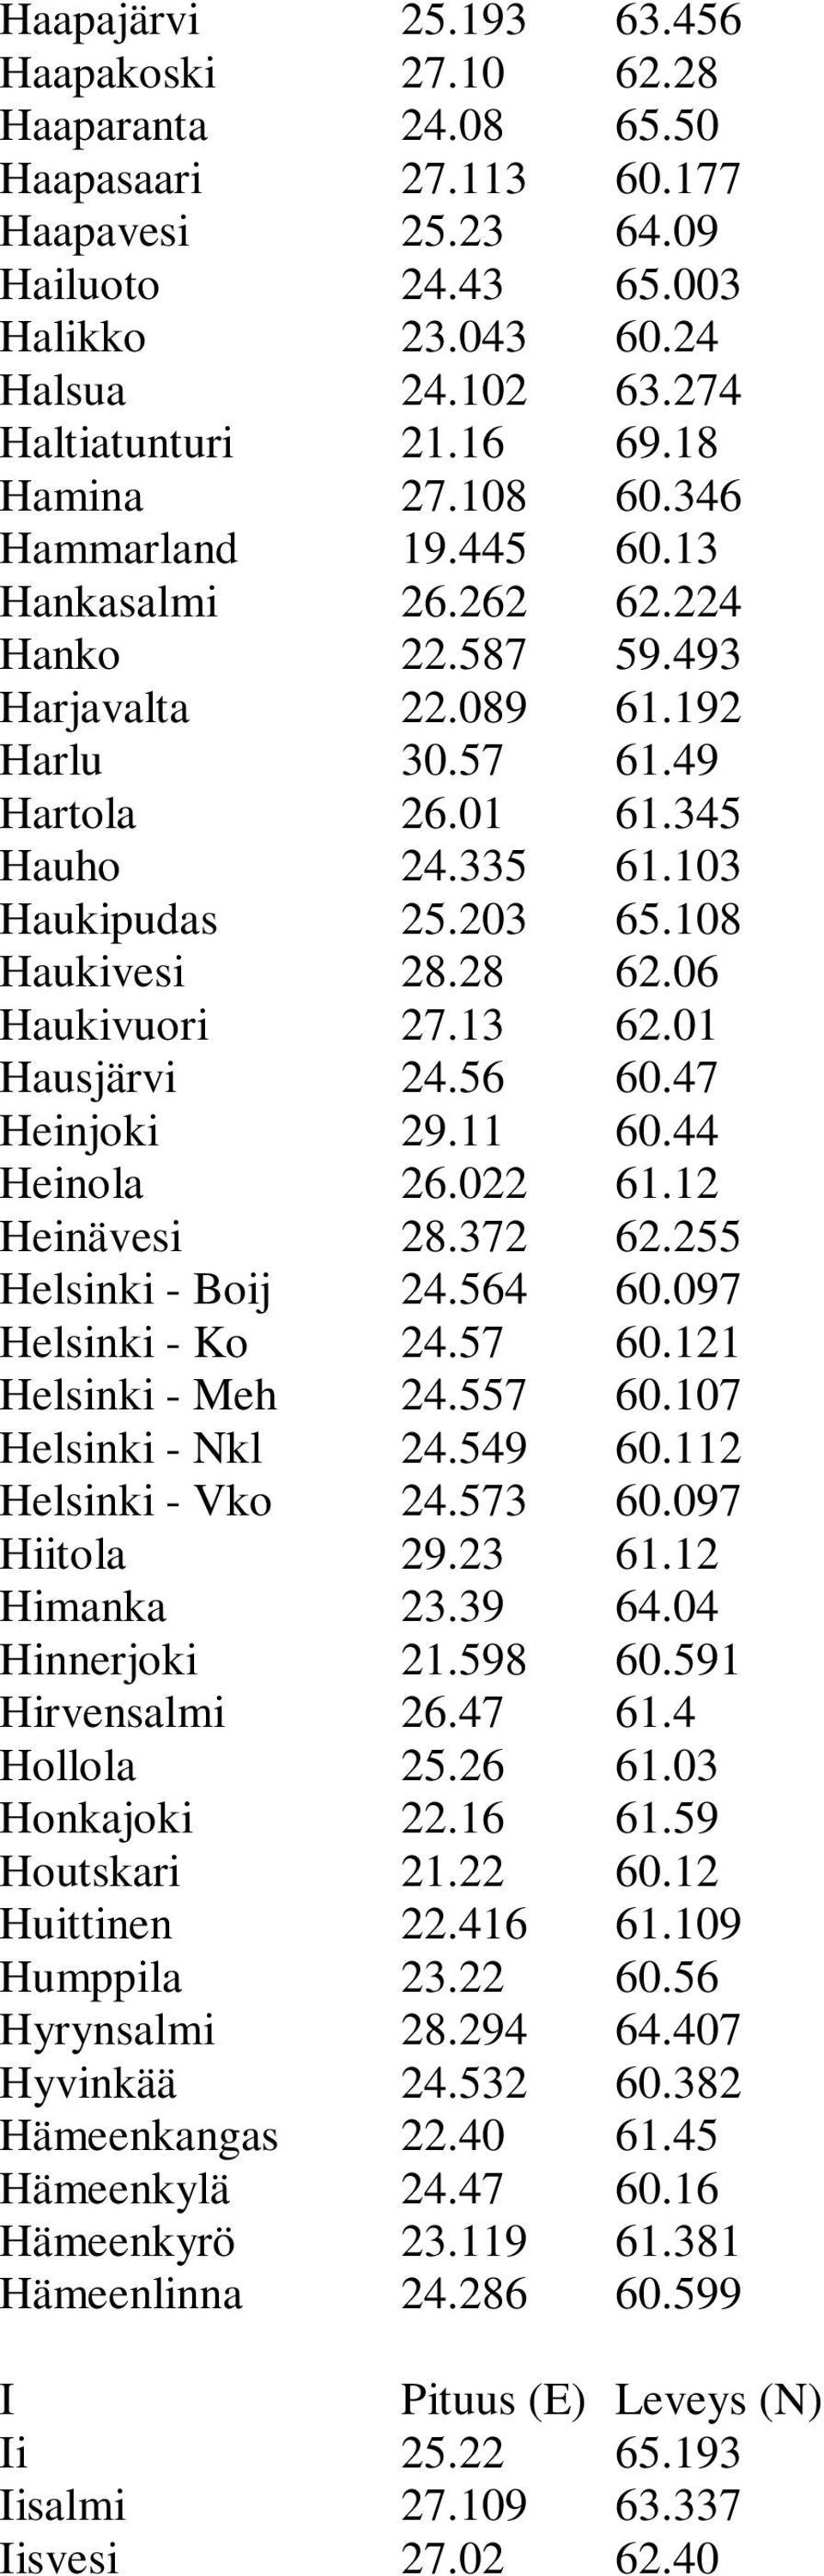 Hyvinkää Hämeenkangas Hämeenkylä Hämeenkyrö Hämeenlinna I Ii Iisalmi Iisvesi 25.193 27.10 24.08 27.113 25.23 24.43 23.043 24.102 21.16 27.108 19.445 26.262 22.587 22.089 30.57 26.01 24.335 25.203 28.